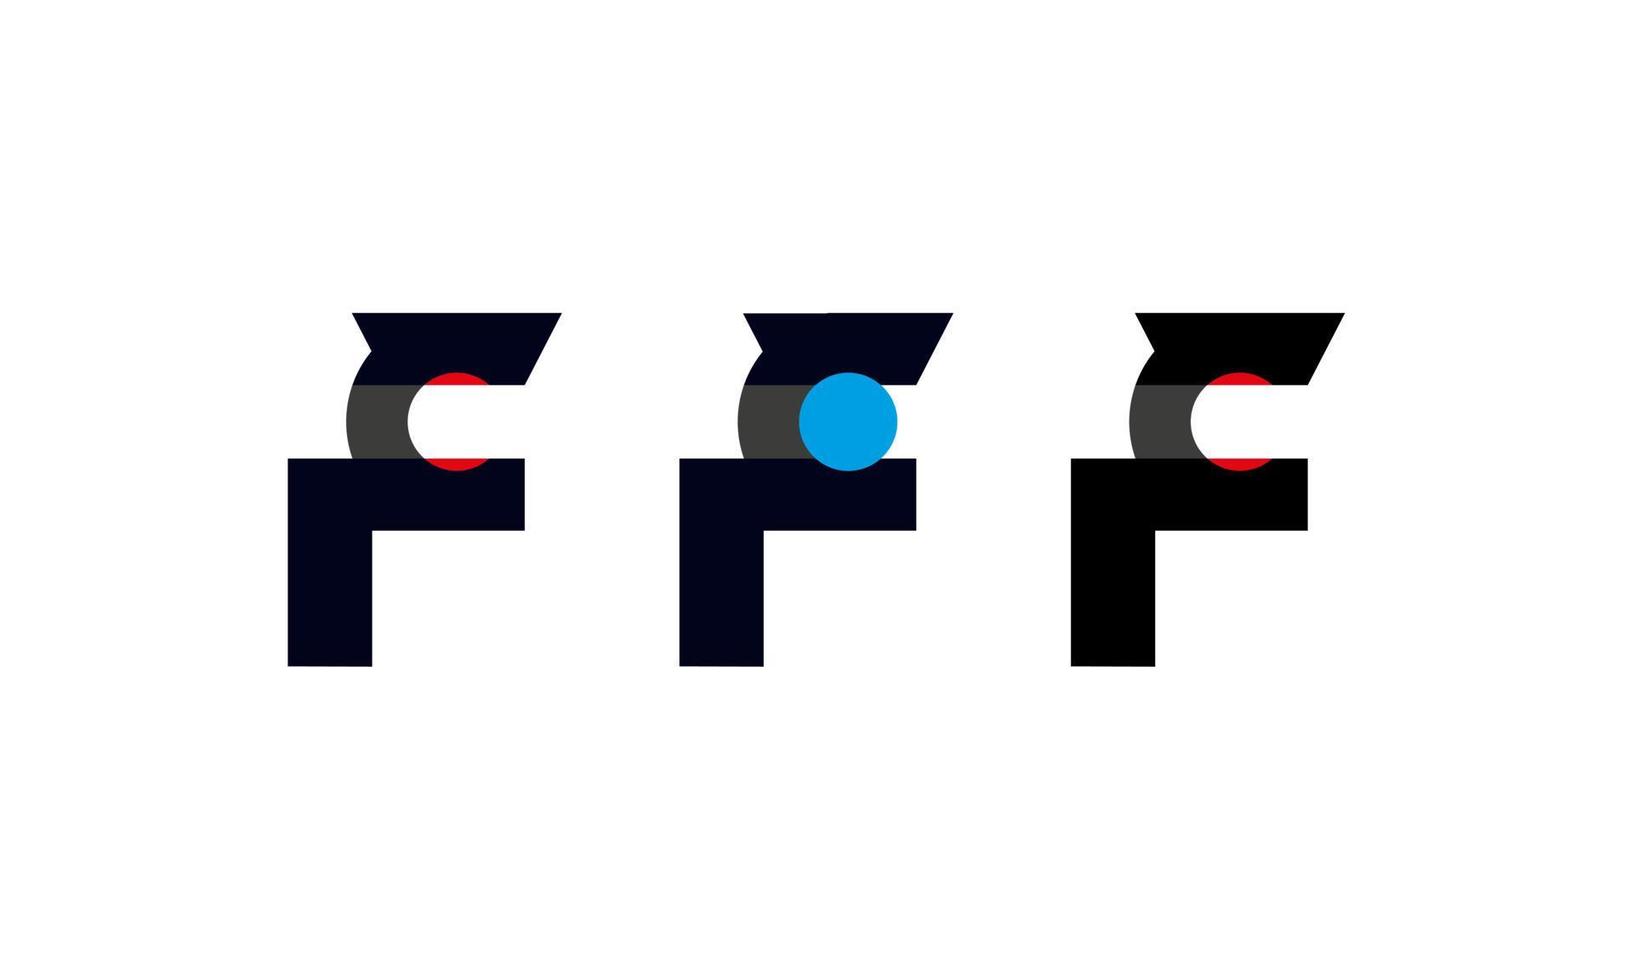 f letter logo design set vector